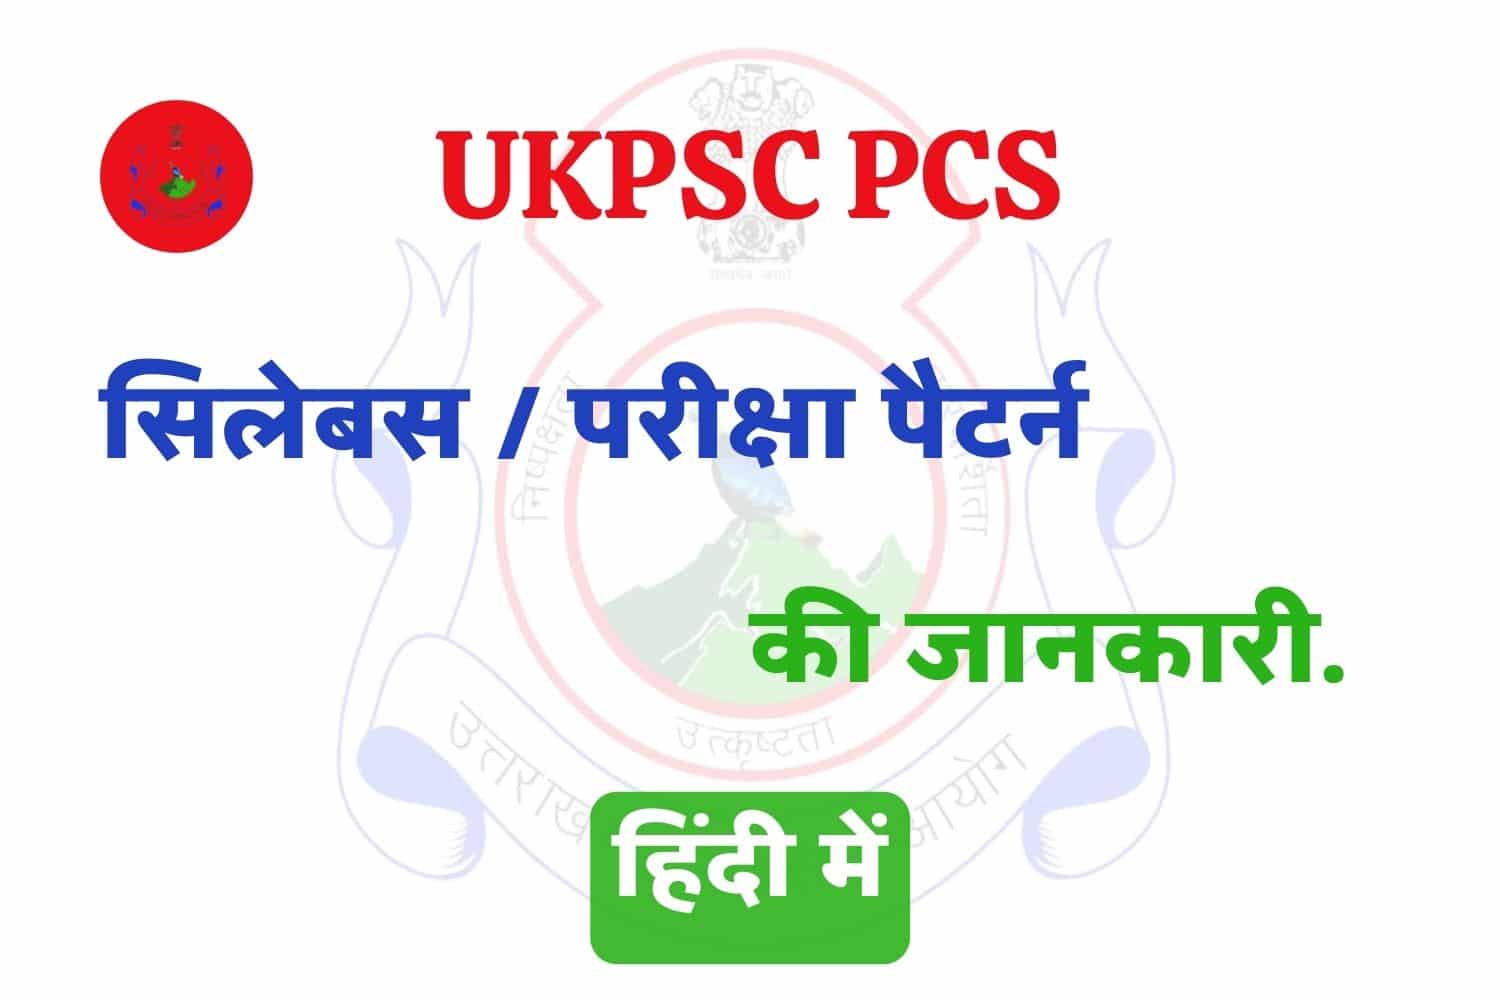 UKPSC PCS Syllabus In Hindi | उत्तराखंड पीसीएस सिलेबस हिंदी में